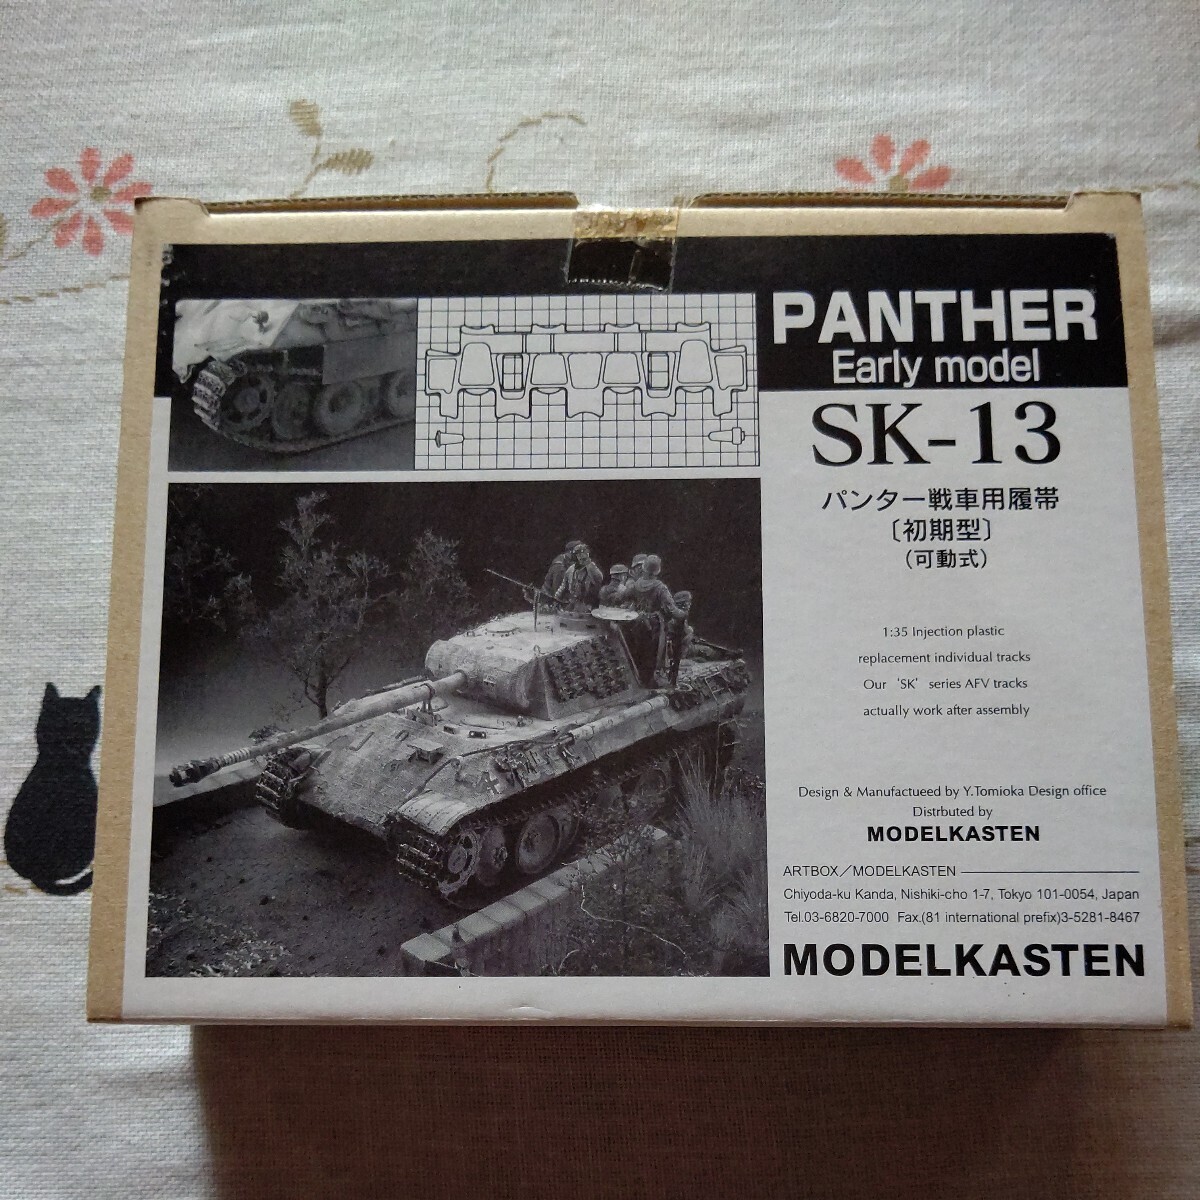 モデルカステン 連結可動履帯 可動式 パンター戦車用履帯 (初期型) SK-13 未組立 _画像1